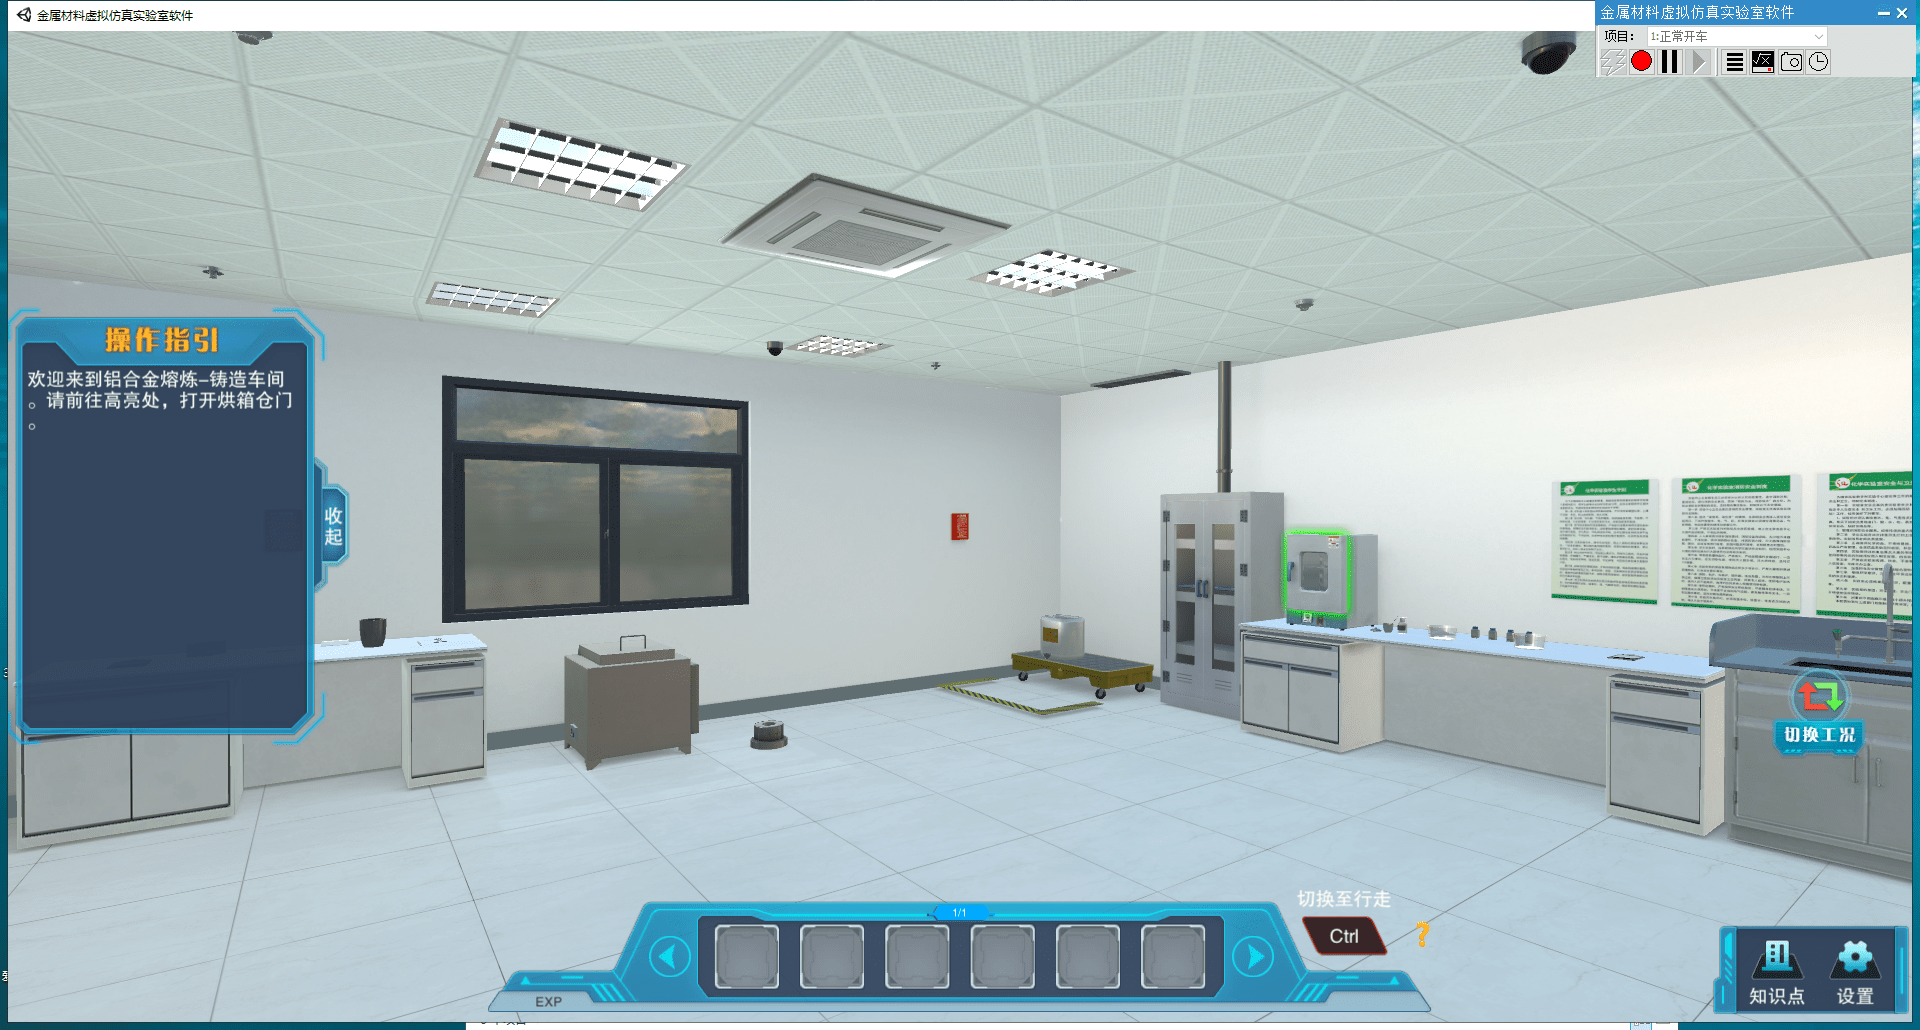 众多金属材料虚拟仿真实验的虚拟仿真软件,职教基地提供物理真实感